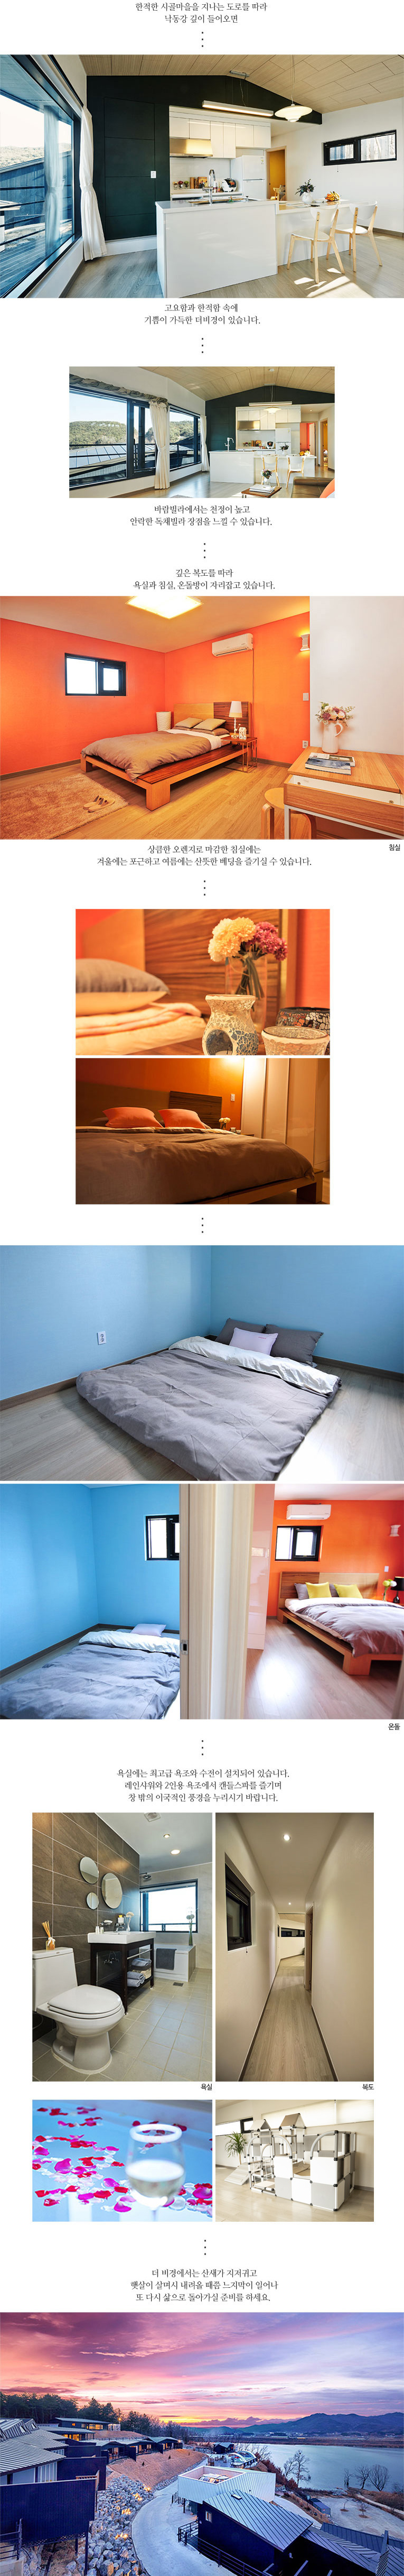 거실 + 조리공간, 침실 + 온돌, 욕실(공통)